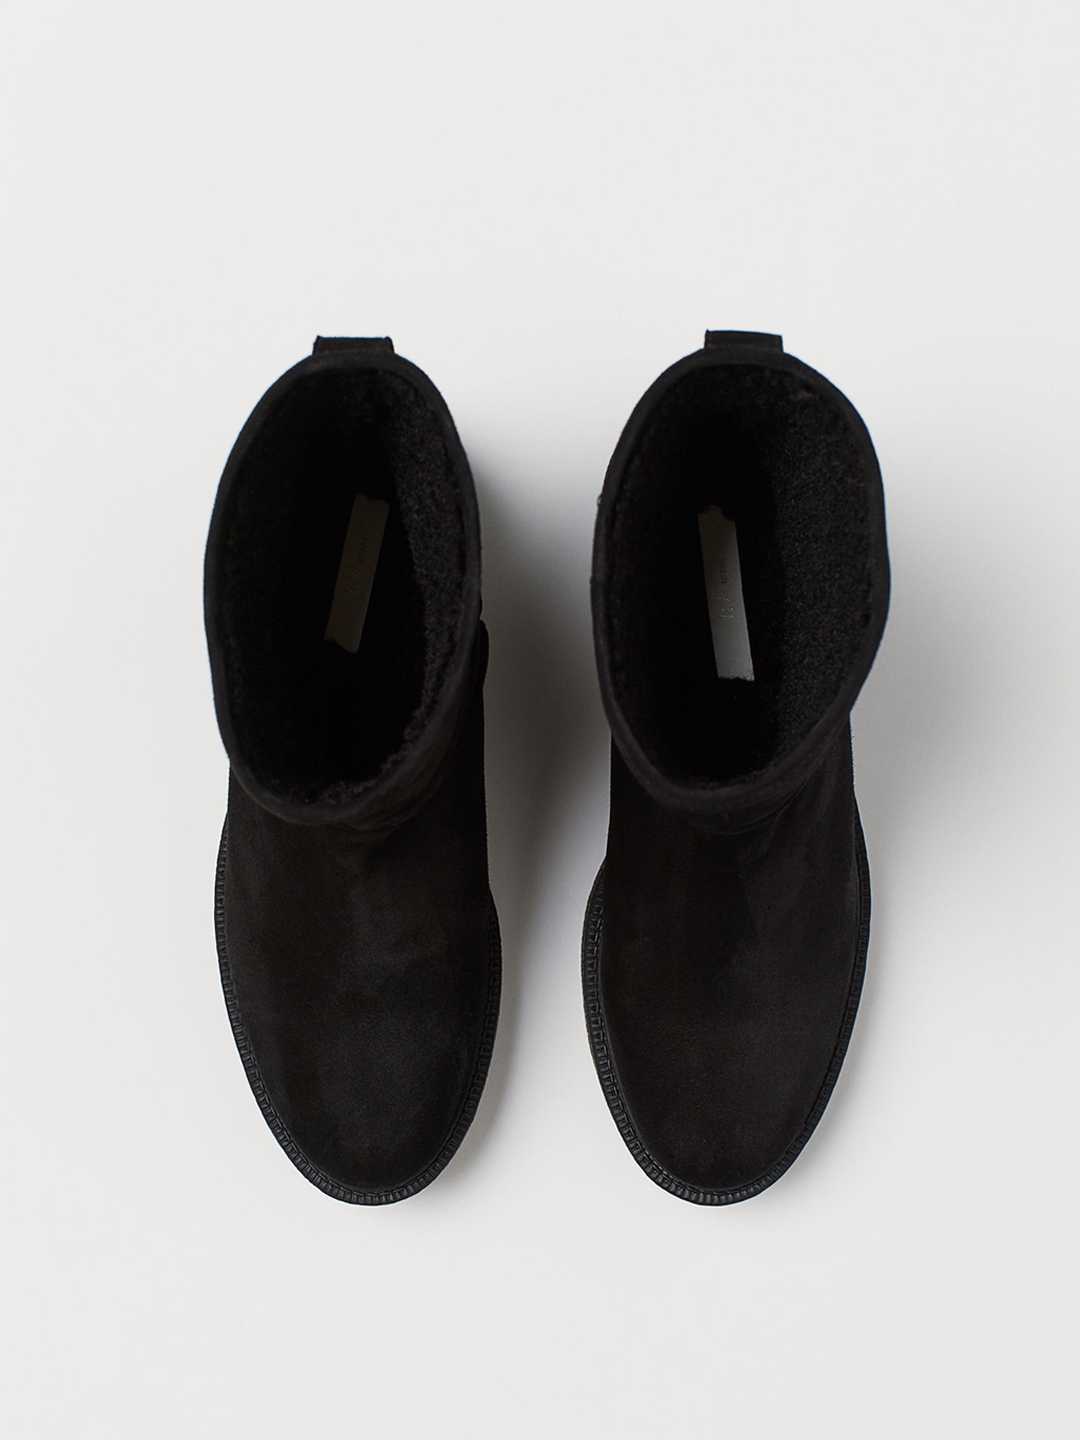 h&m black boots